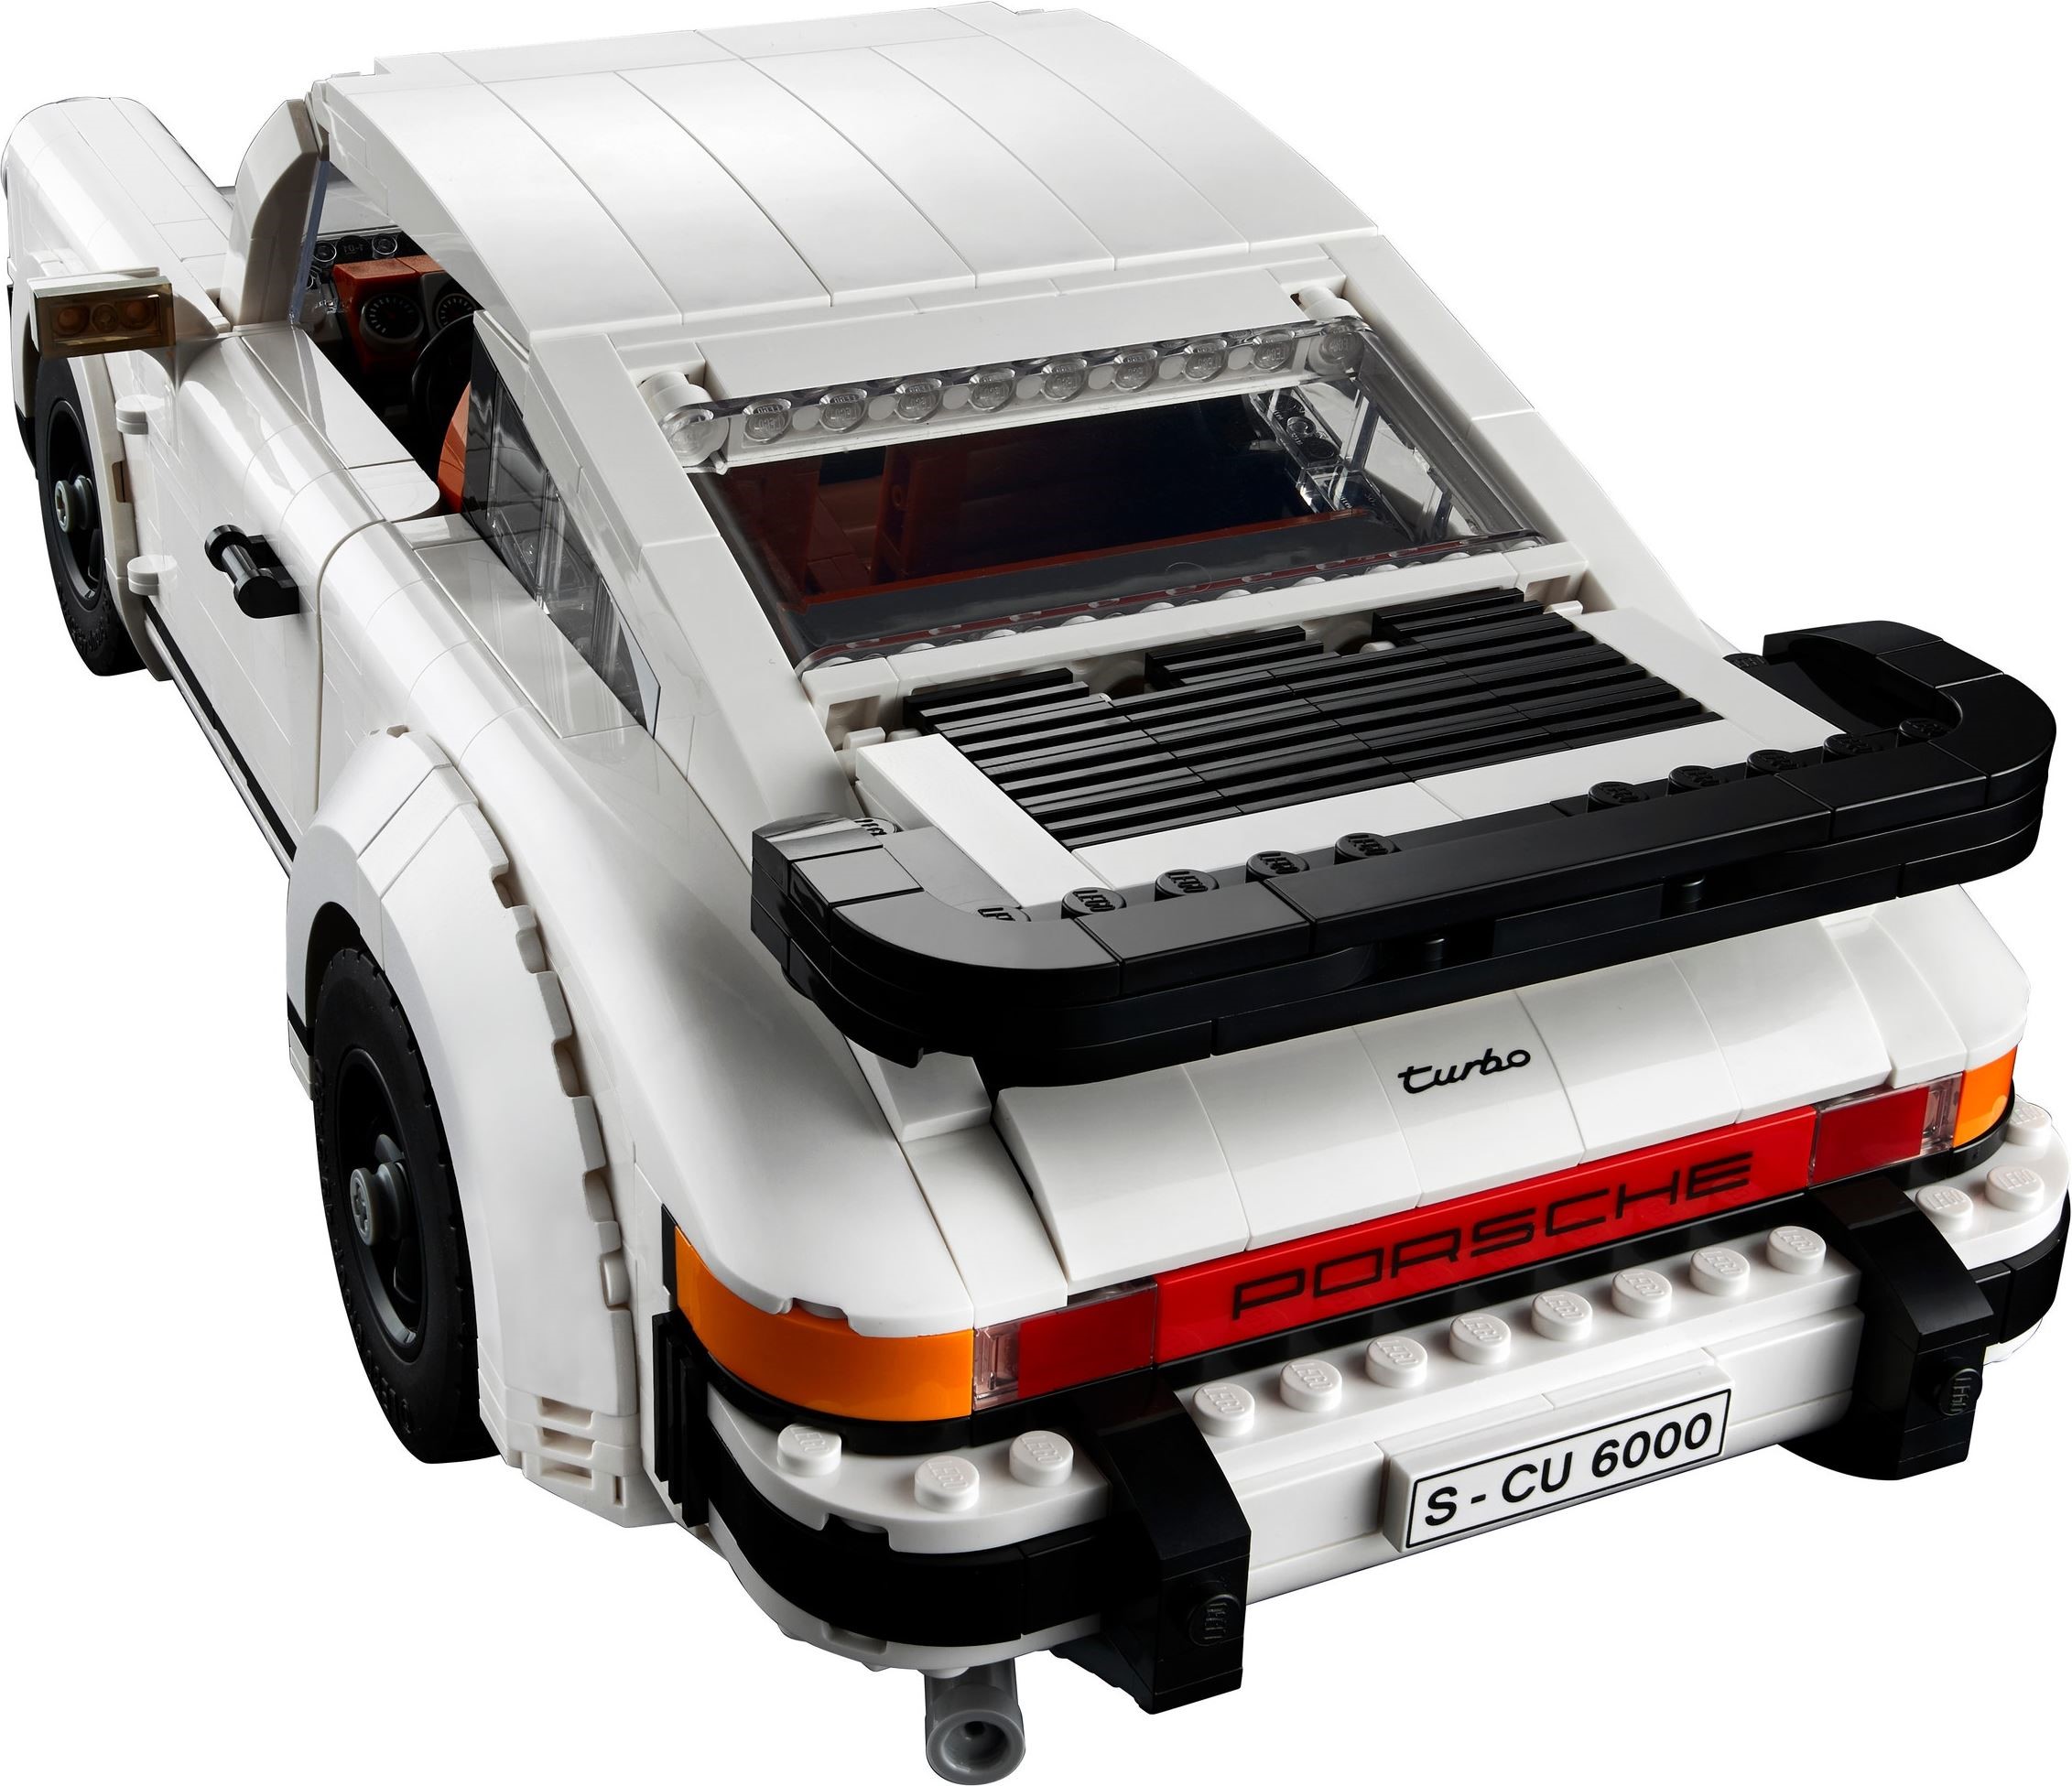 SASOM  collectibles Lego Porsche 911 Check the latest price now!